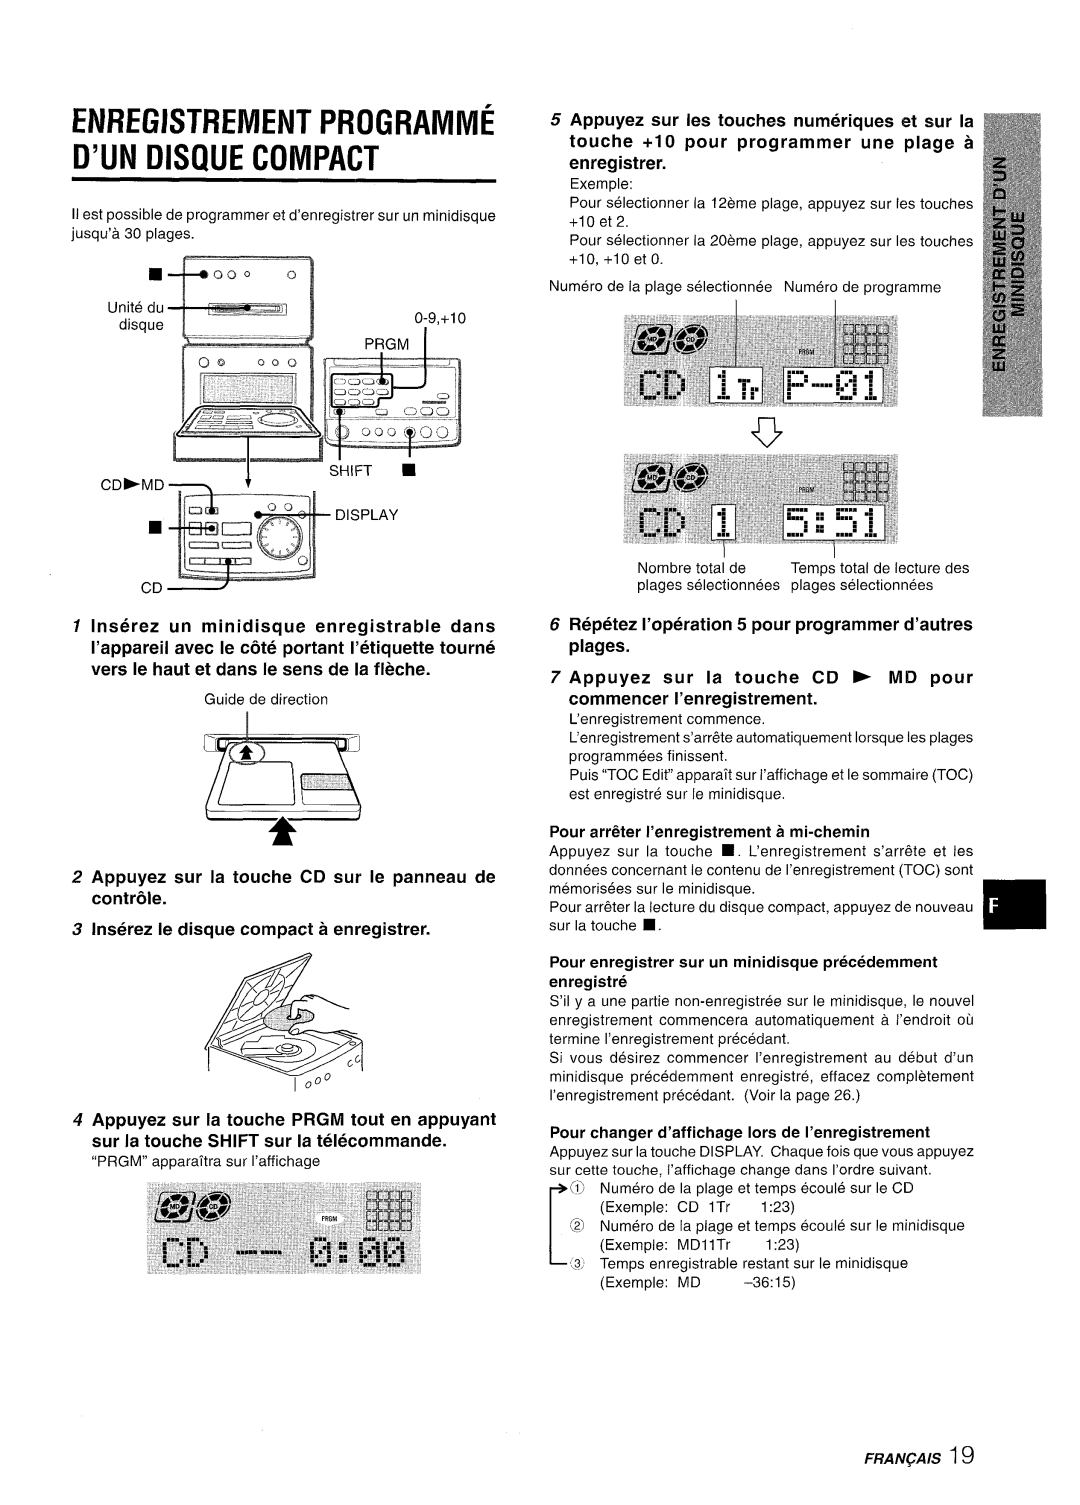 Aiwa XR-MD95 manual Enregistrement Programme D’Un Disque Compact, Appuyez sur Ies touches numeriques et sur la 